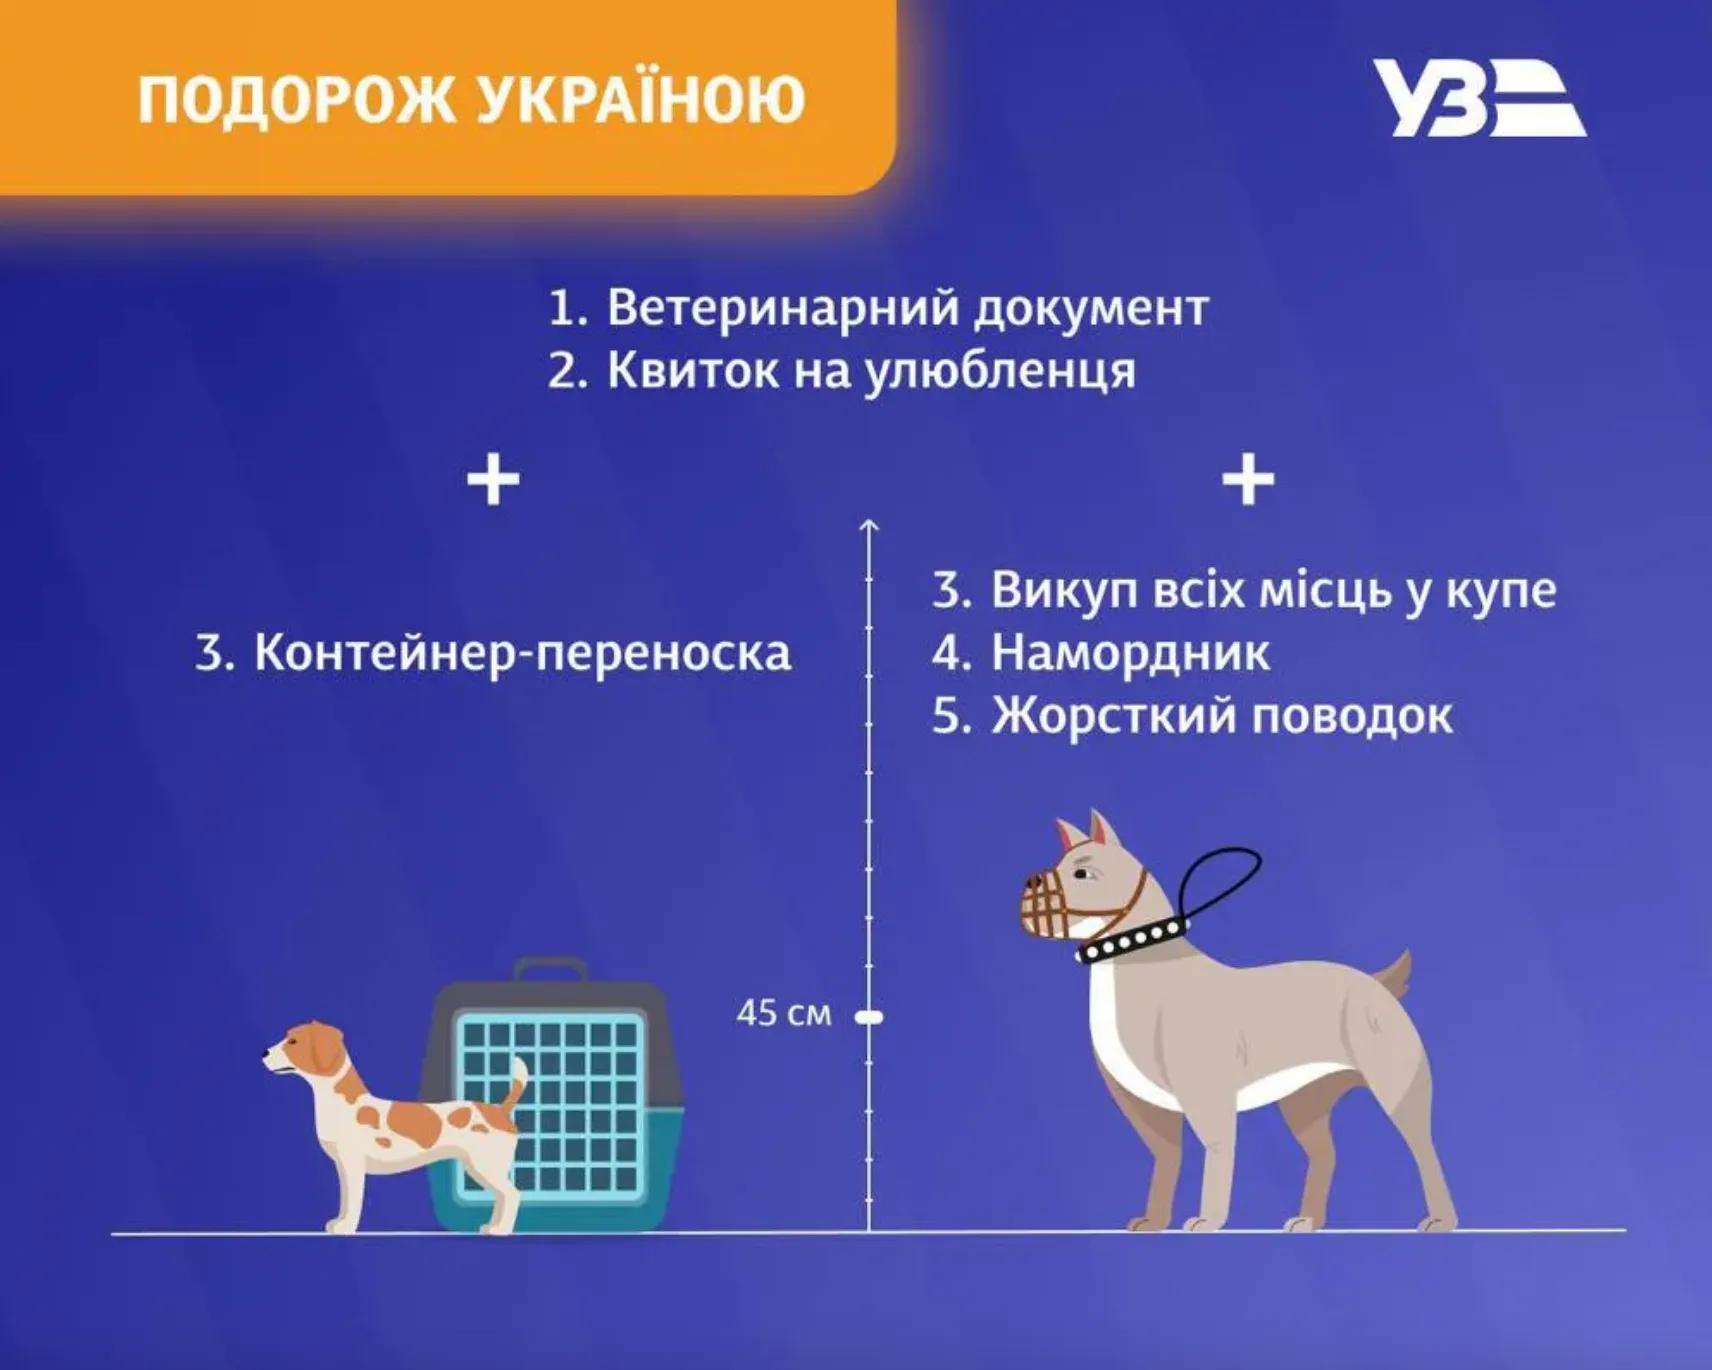 Які документи потрібні для подорожі з тваринами Україною